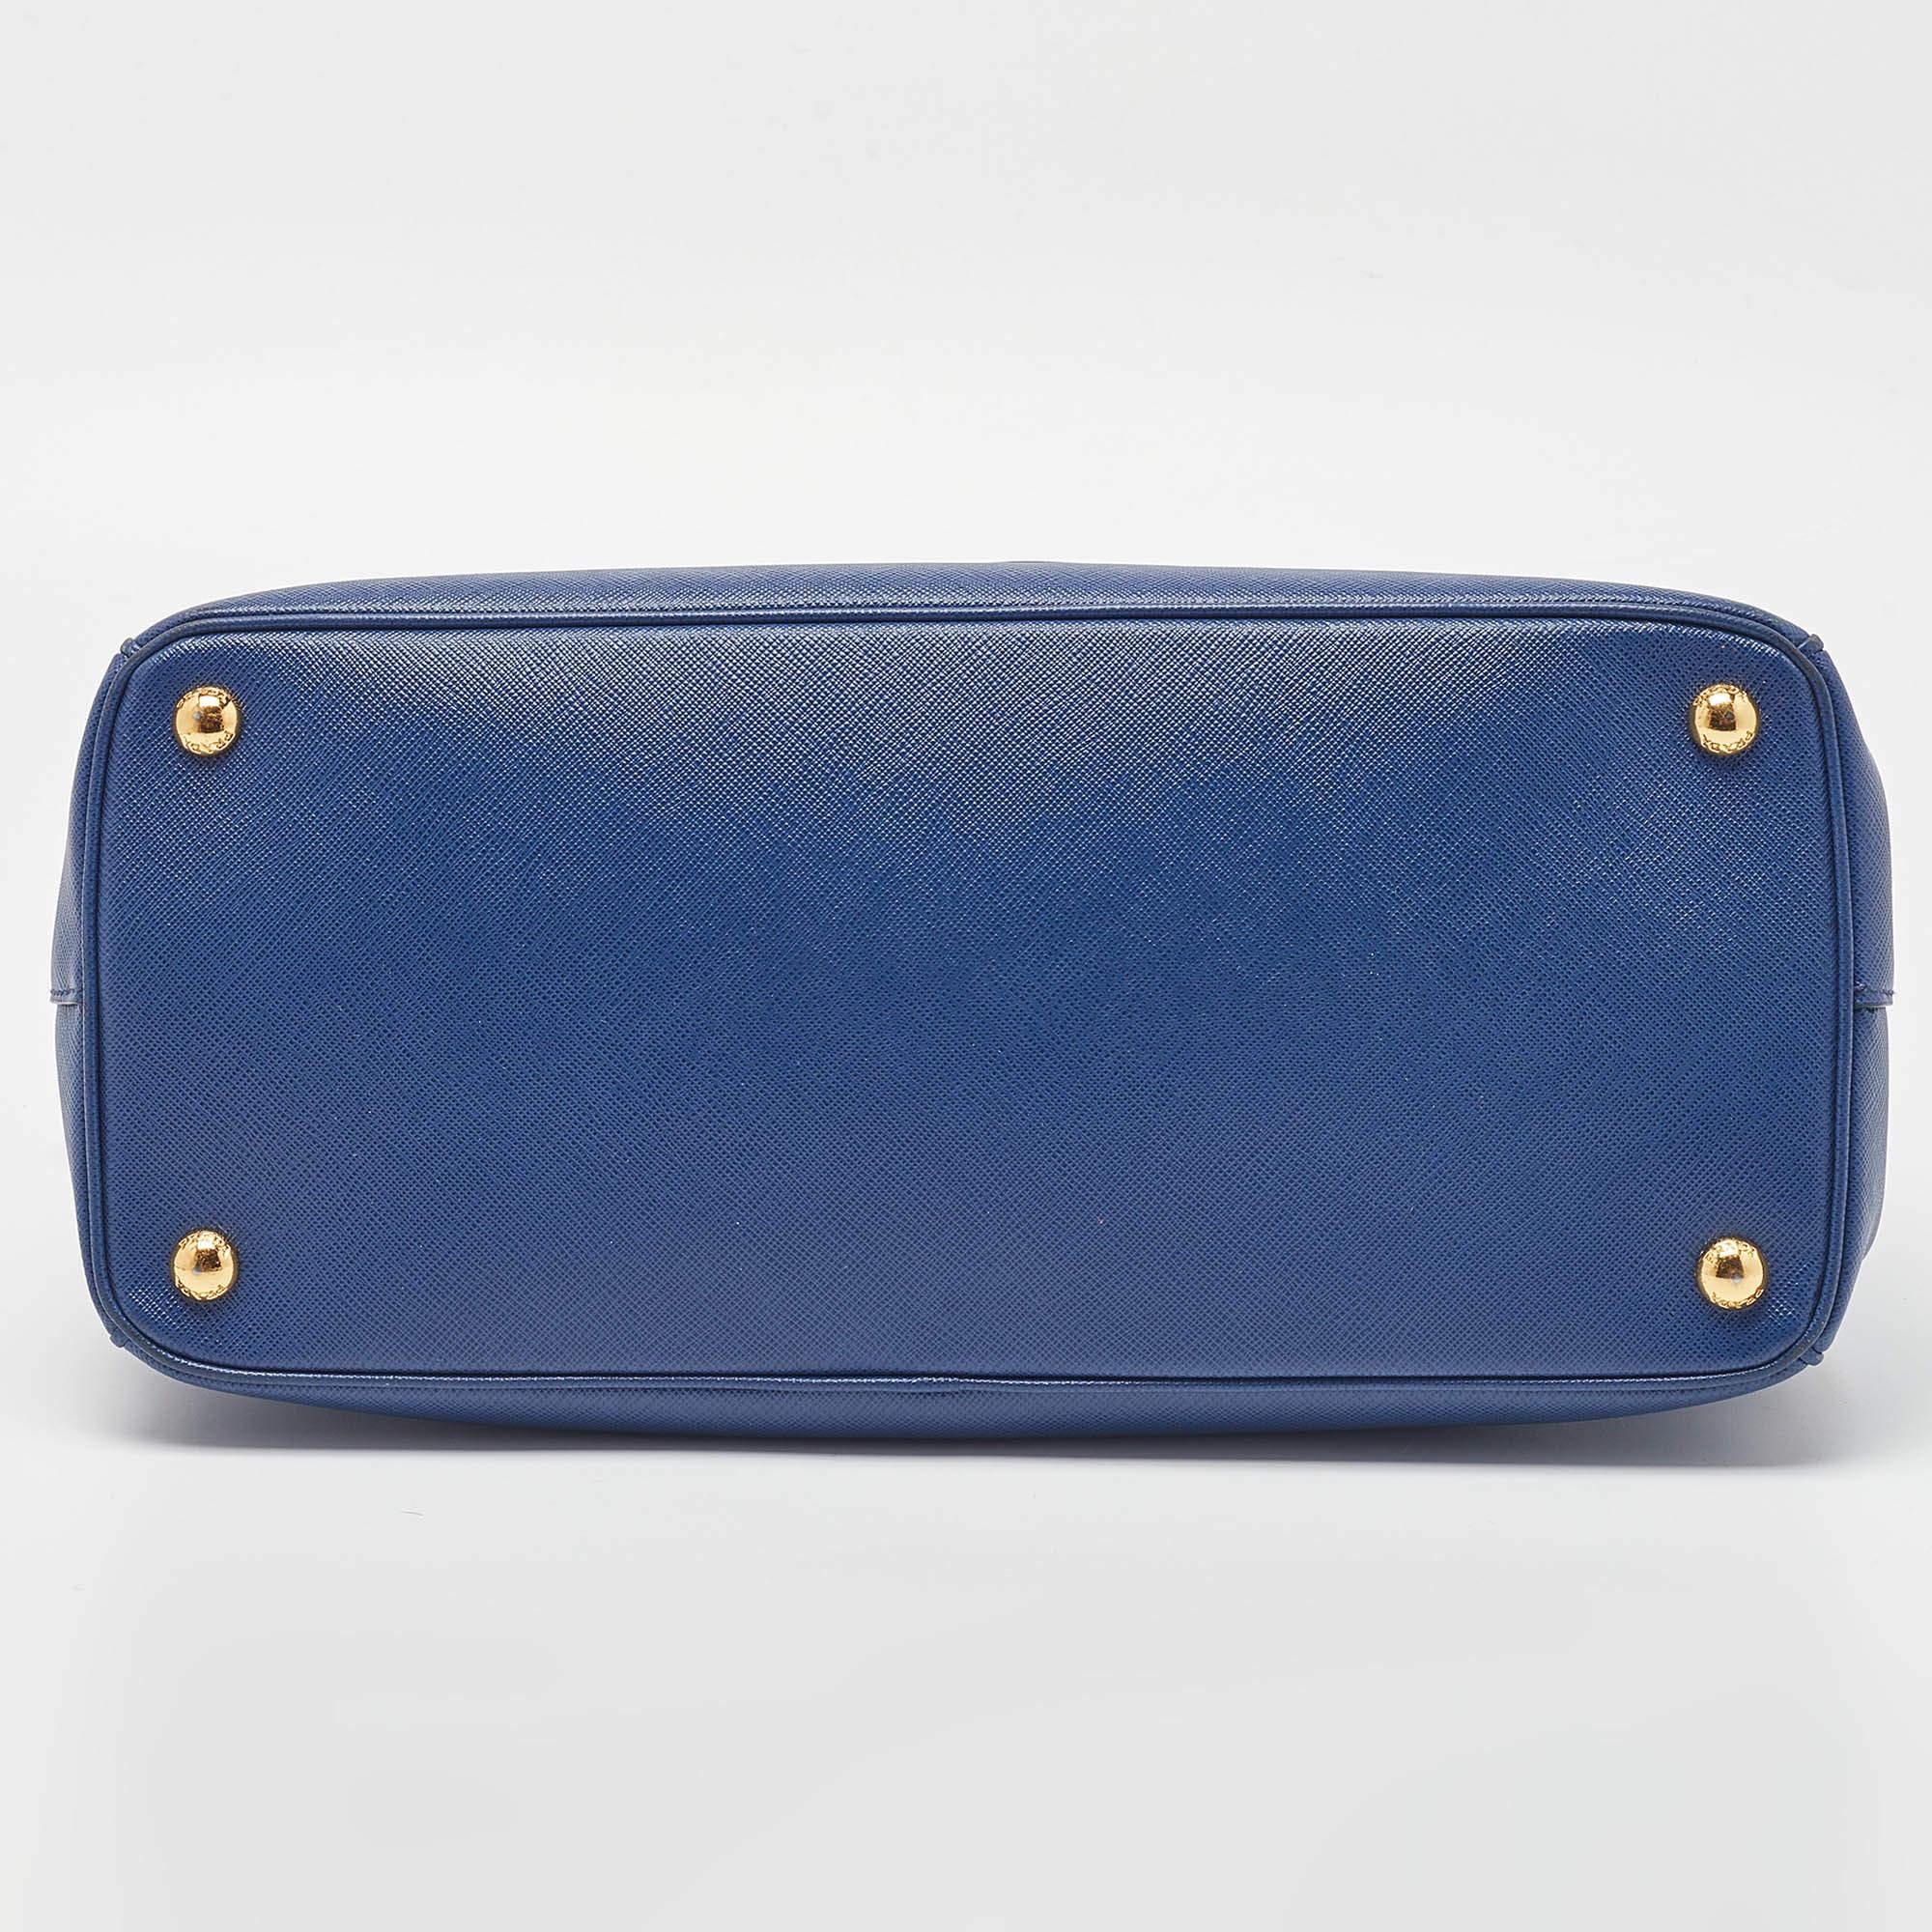 Prada Blue Saffiano Lux Leather Medium Galleria Tote 4